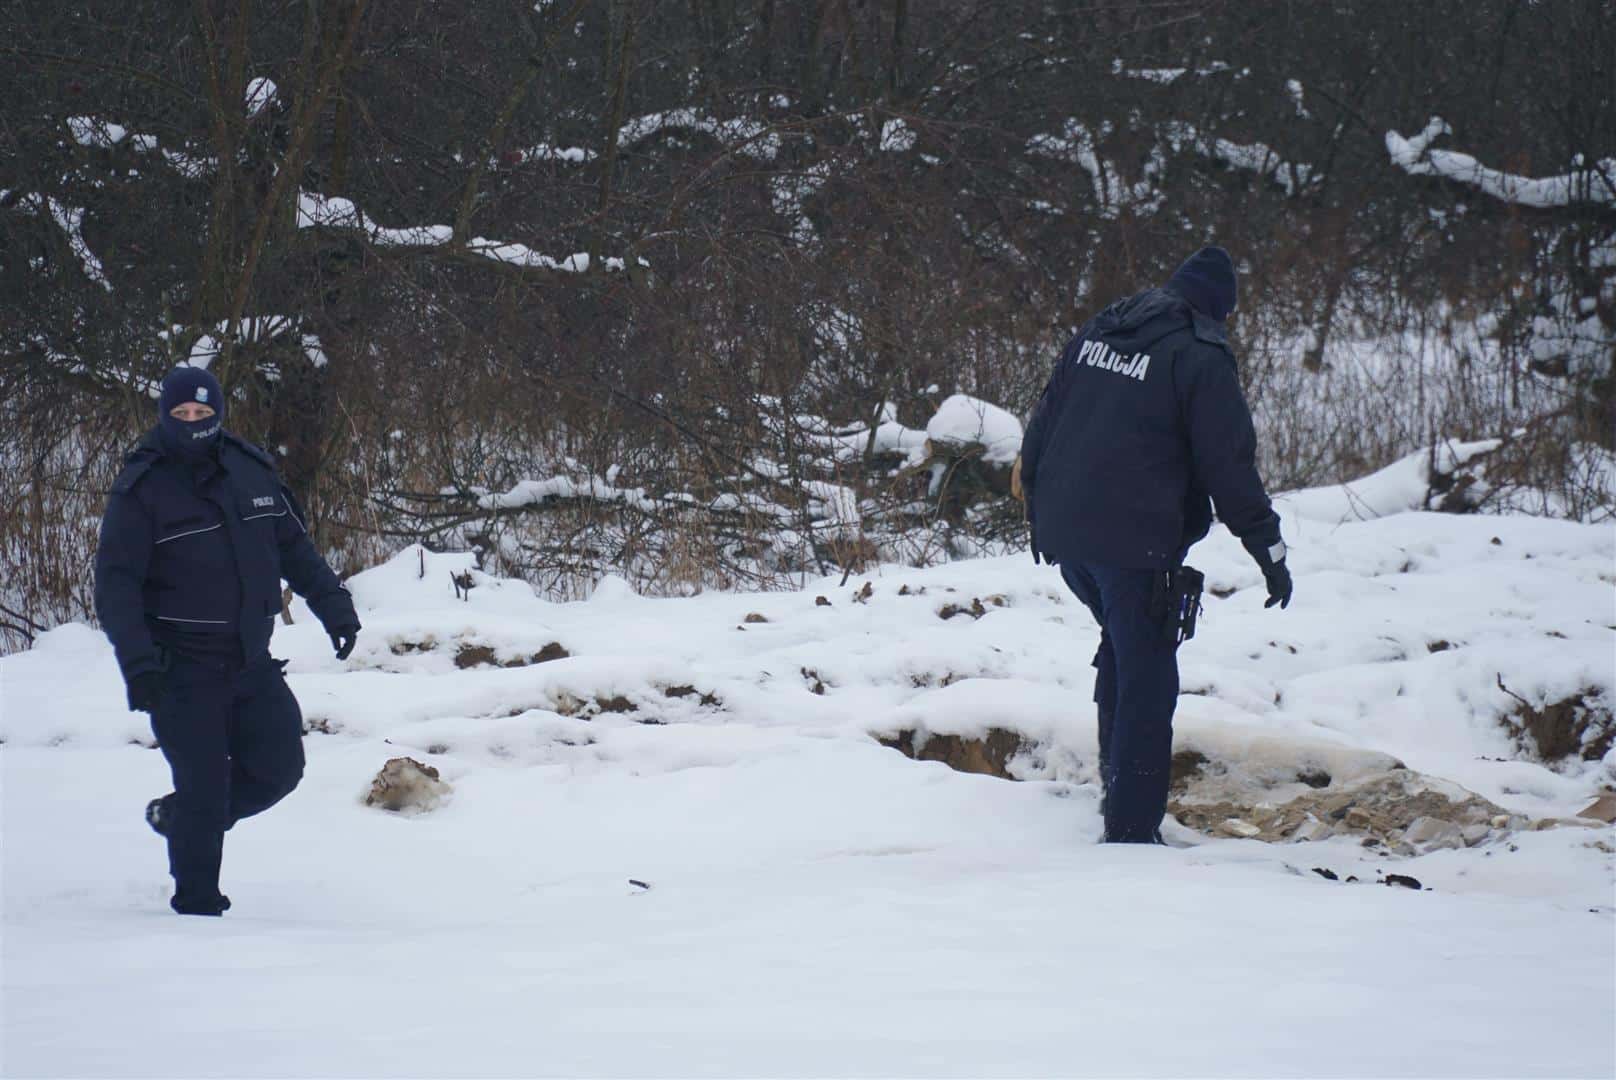 Policja mobilizuje coraz większe siły do poszukiwań Witolda. Co wiadomo na temat zaginięcia?